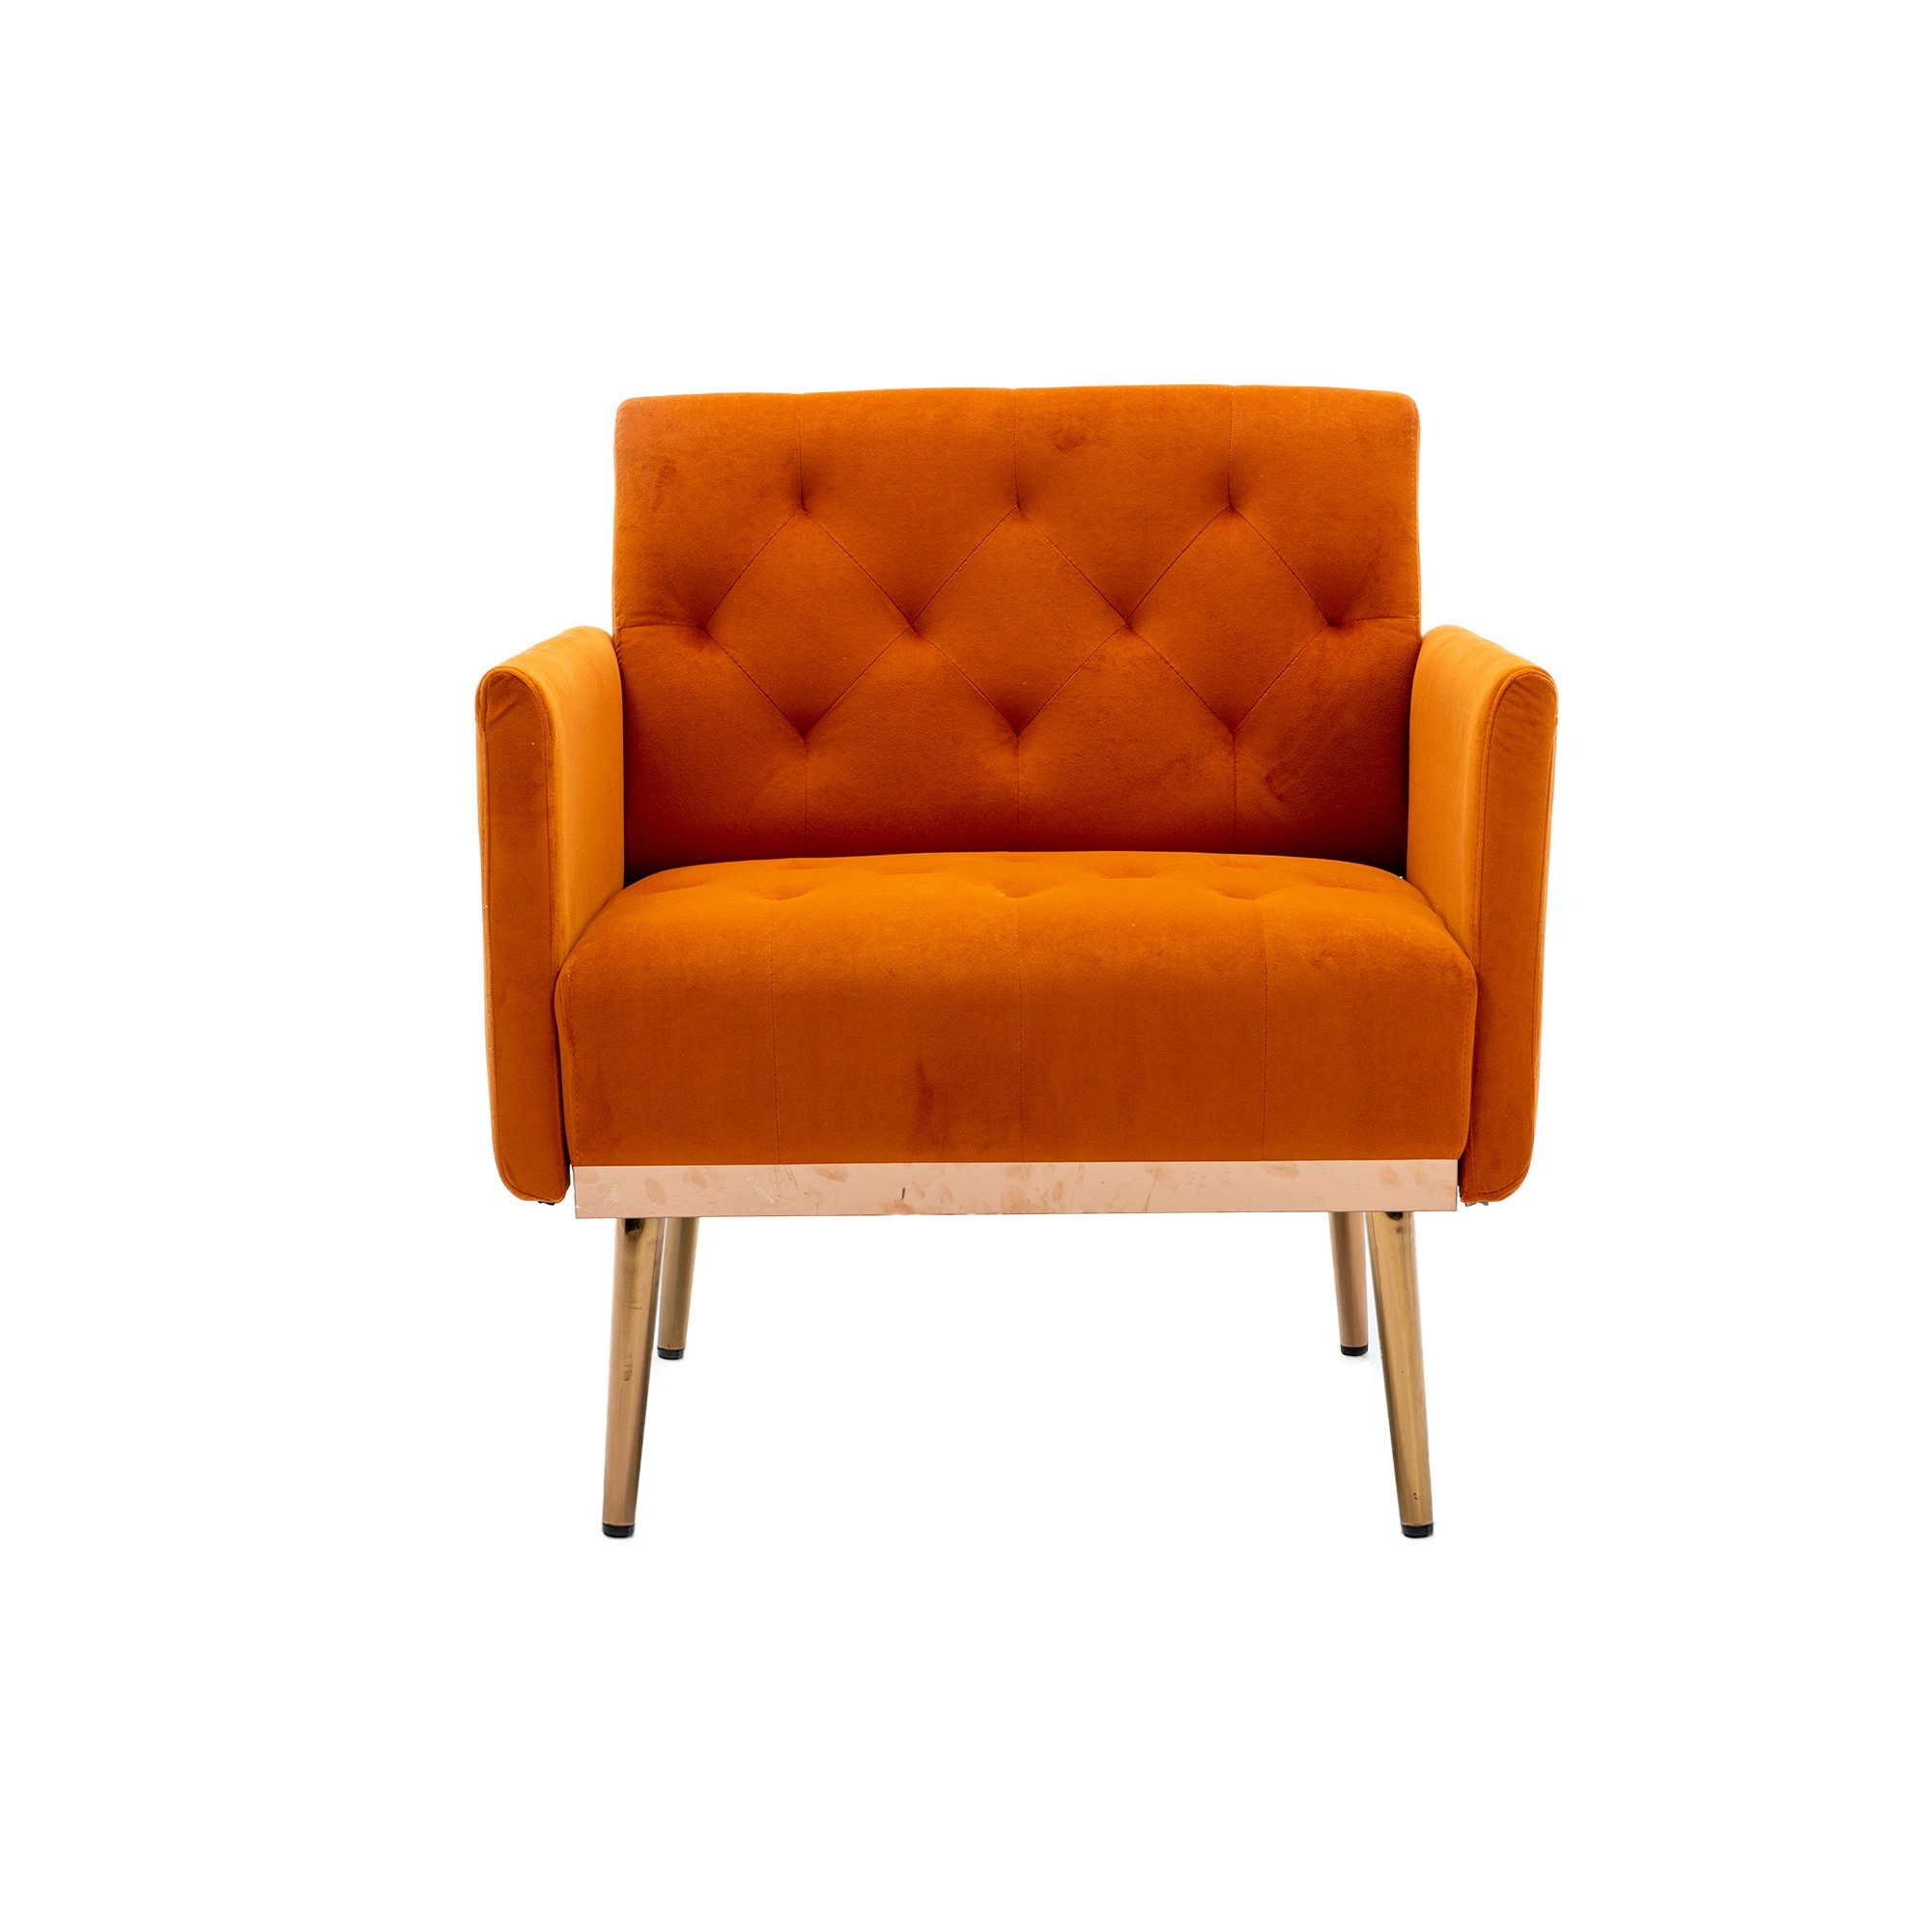 REDOM Esszimmerstuhl Freizeitsessel mit roségoldenen Füßen,Vierbeiniger Akzentstuhl Stuhl, orange